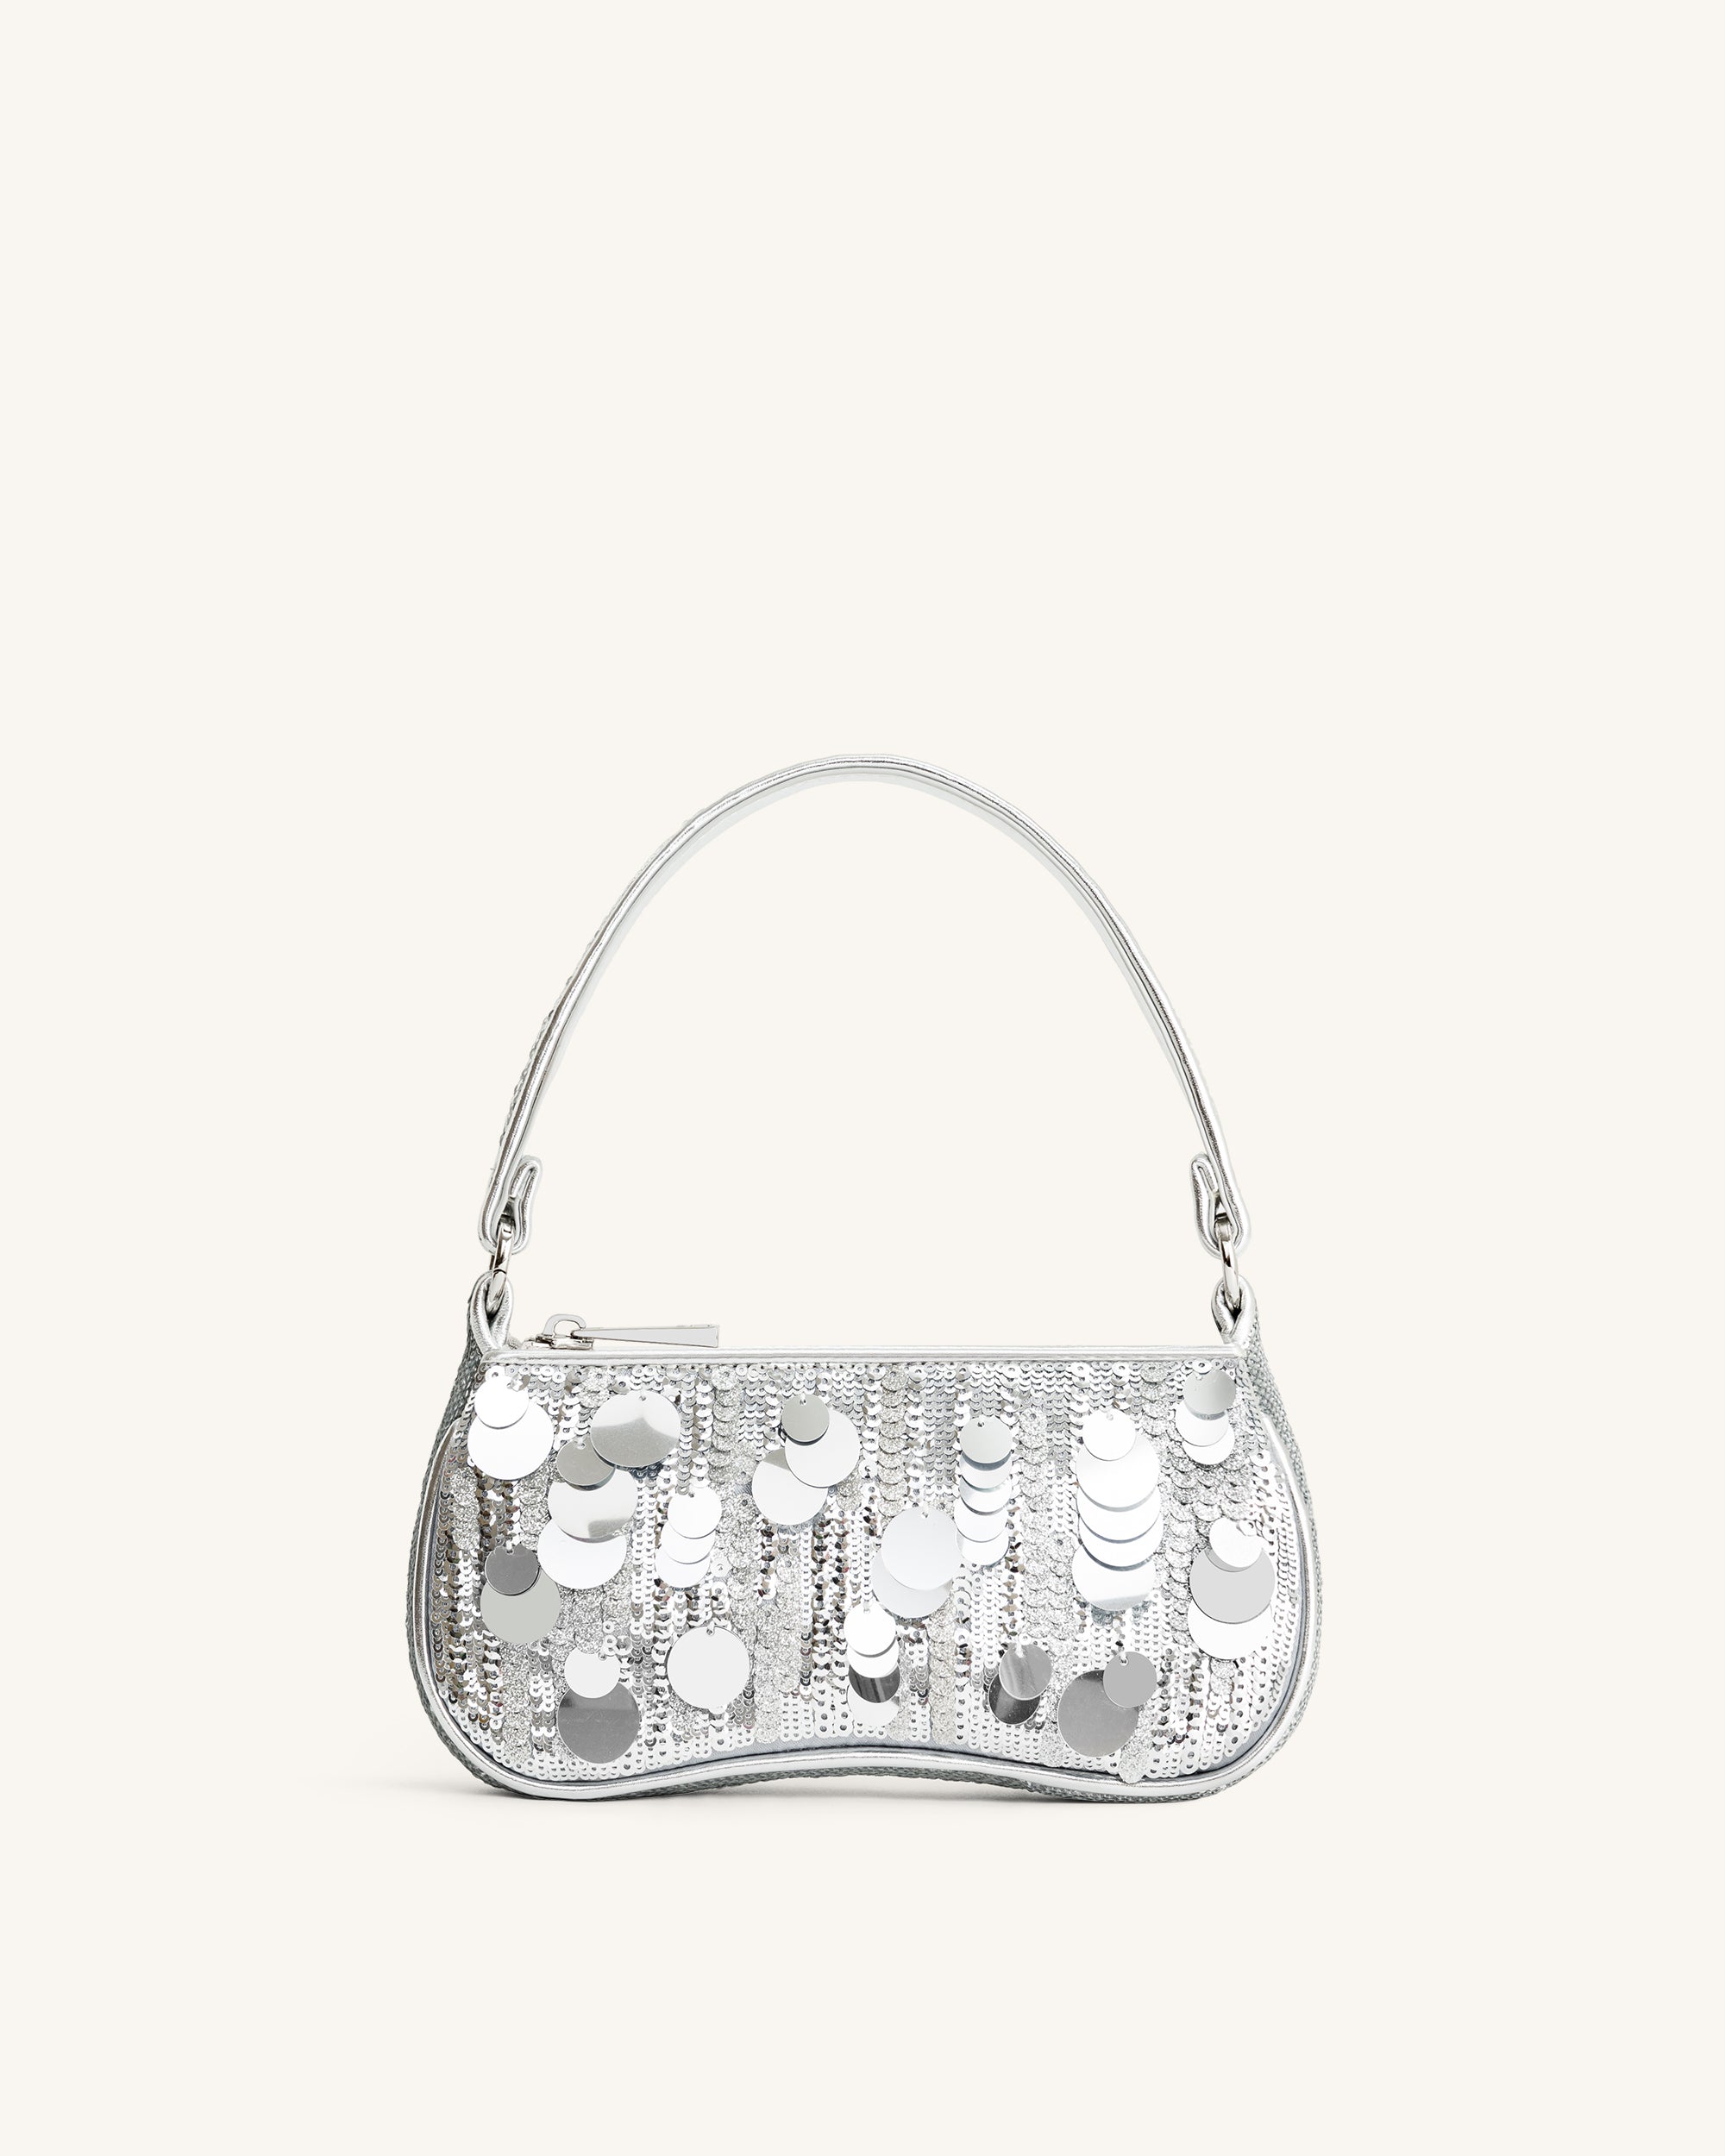 Chanel Mini Flap, Silver Sequin, New in Dustbag WA001 - Julia Rose Boston |  Shop